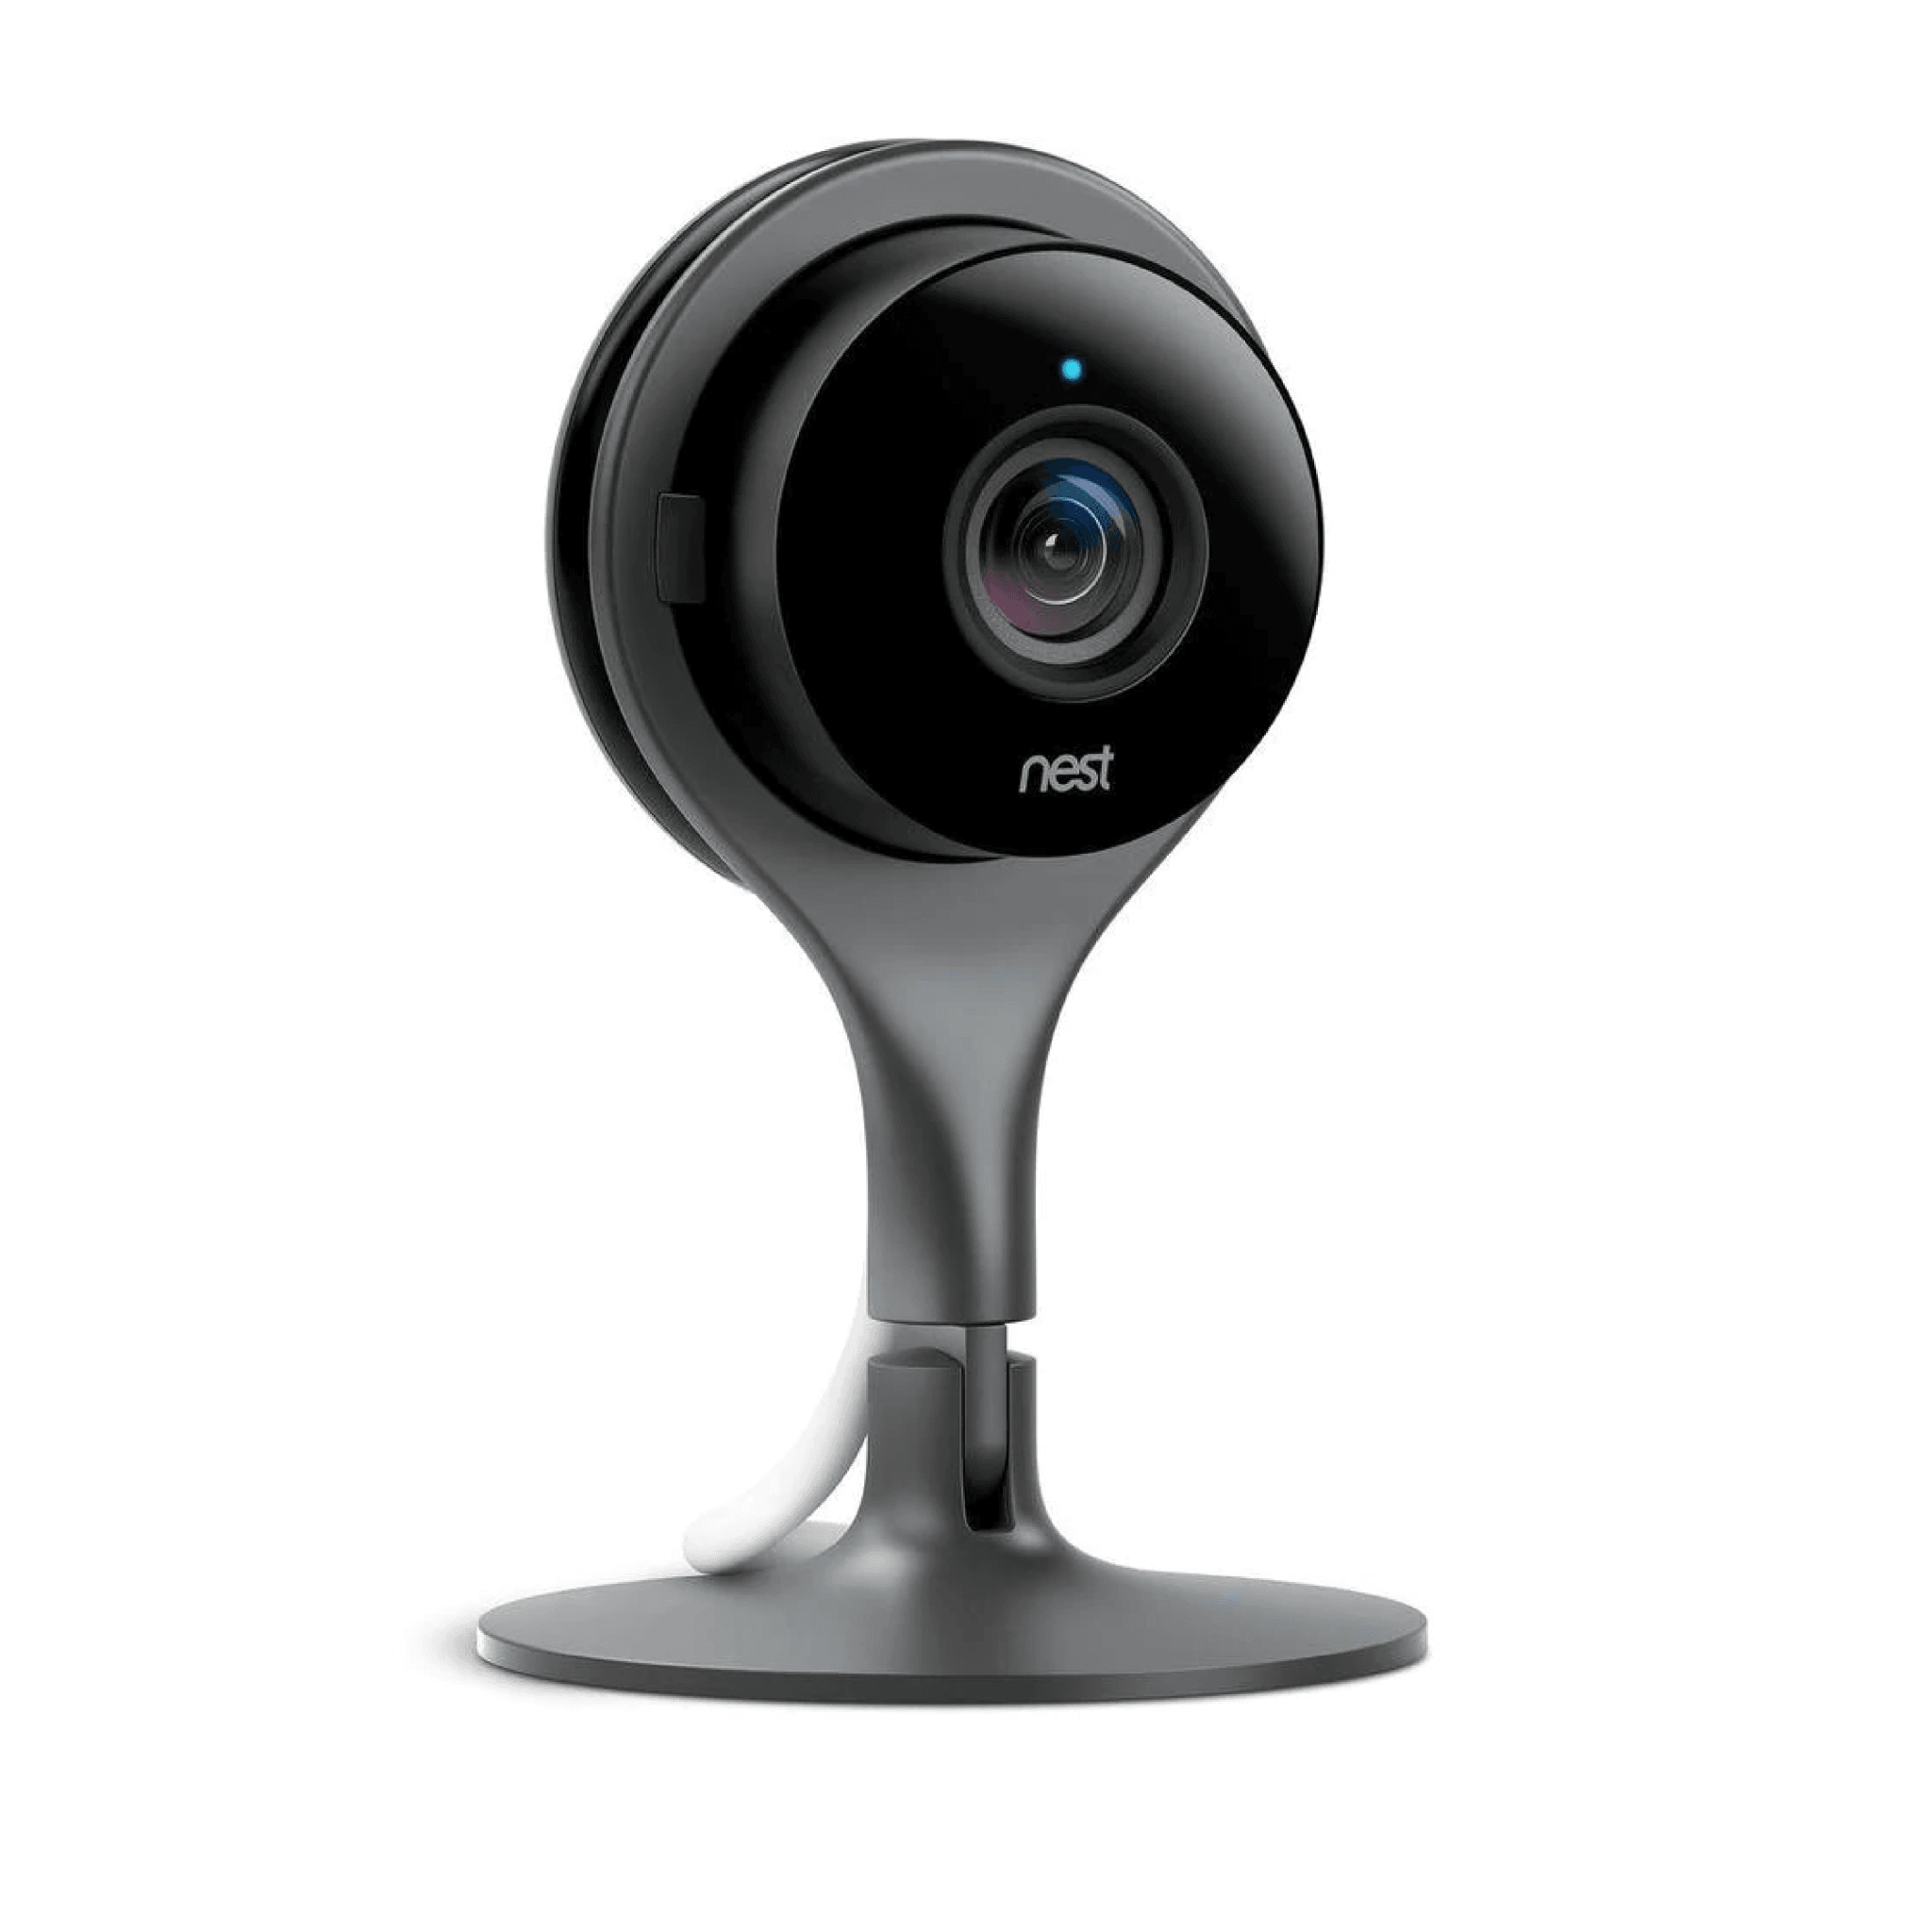 Google Nest Cam Indoor Security Camera - Black - Store 974 | ستور ٩٧٤